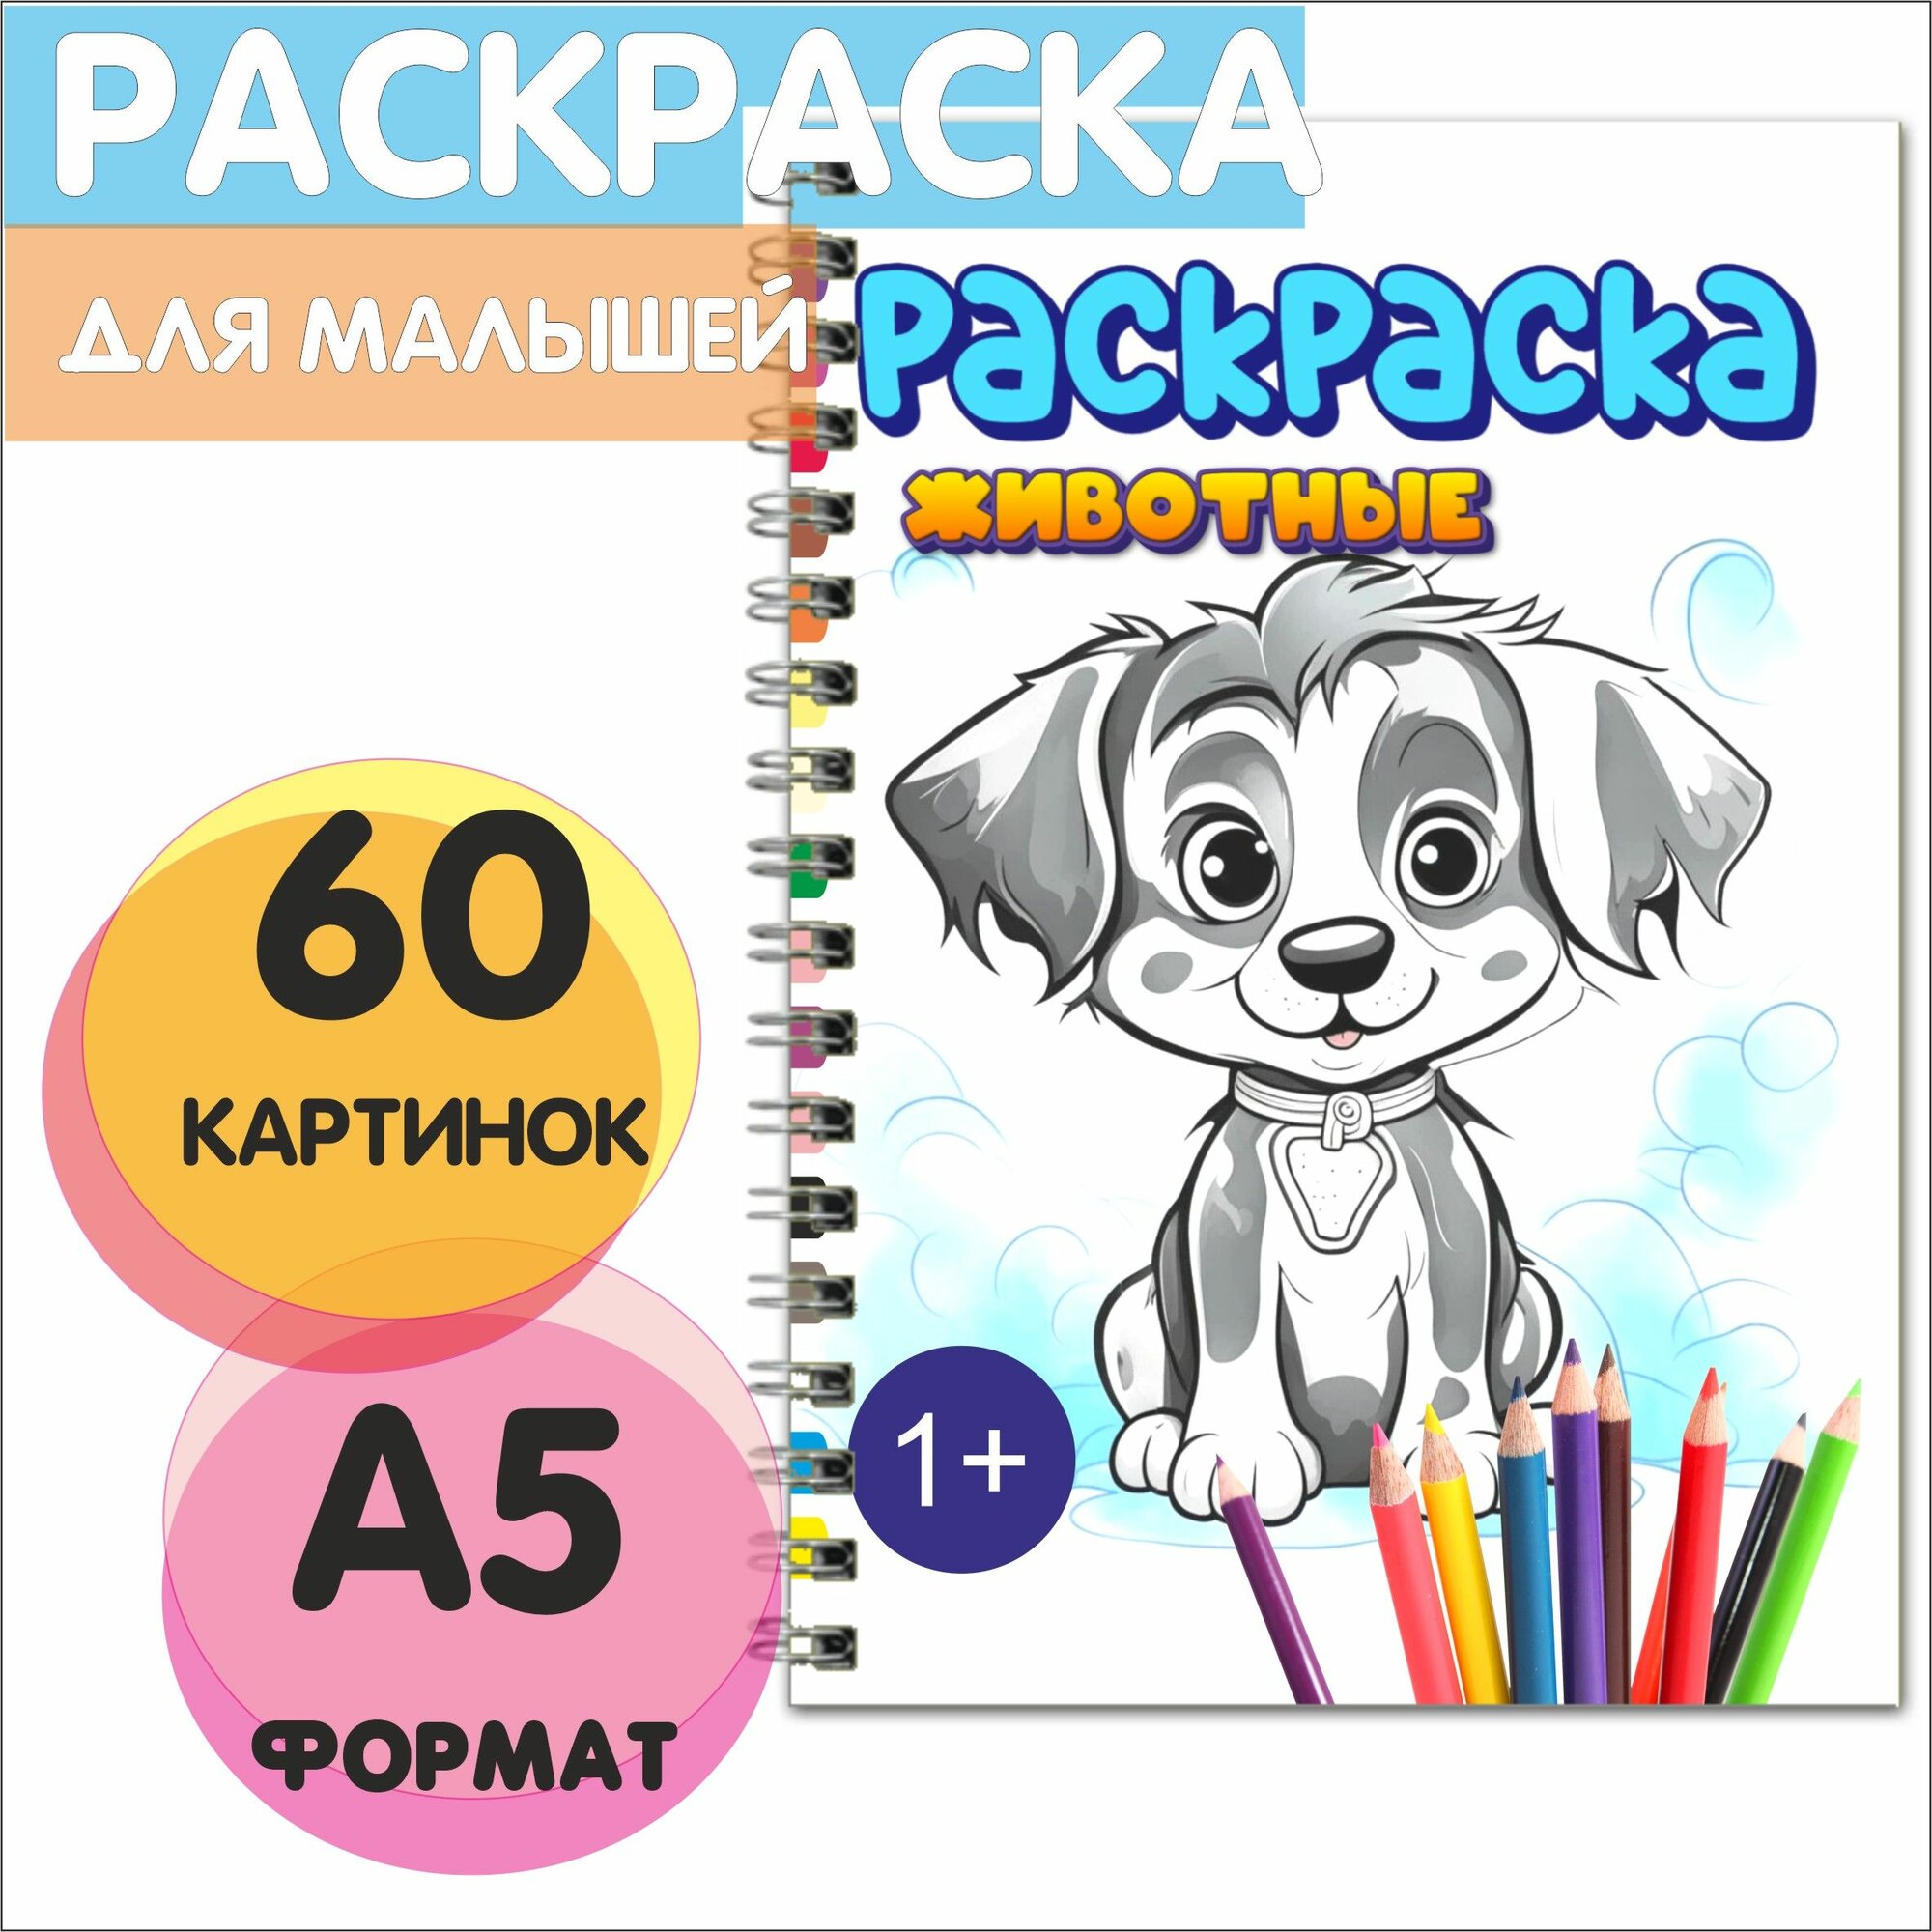 Раскраска для малышей А5 формата 60 картинок "Животные" развивающая для детей